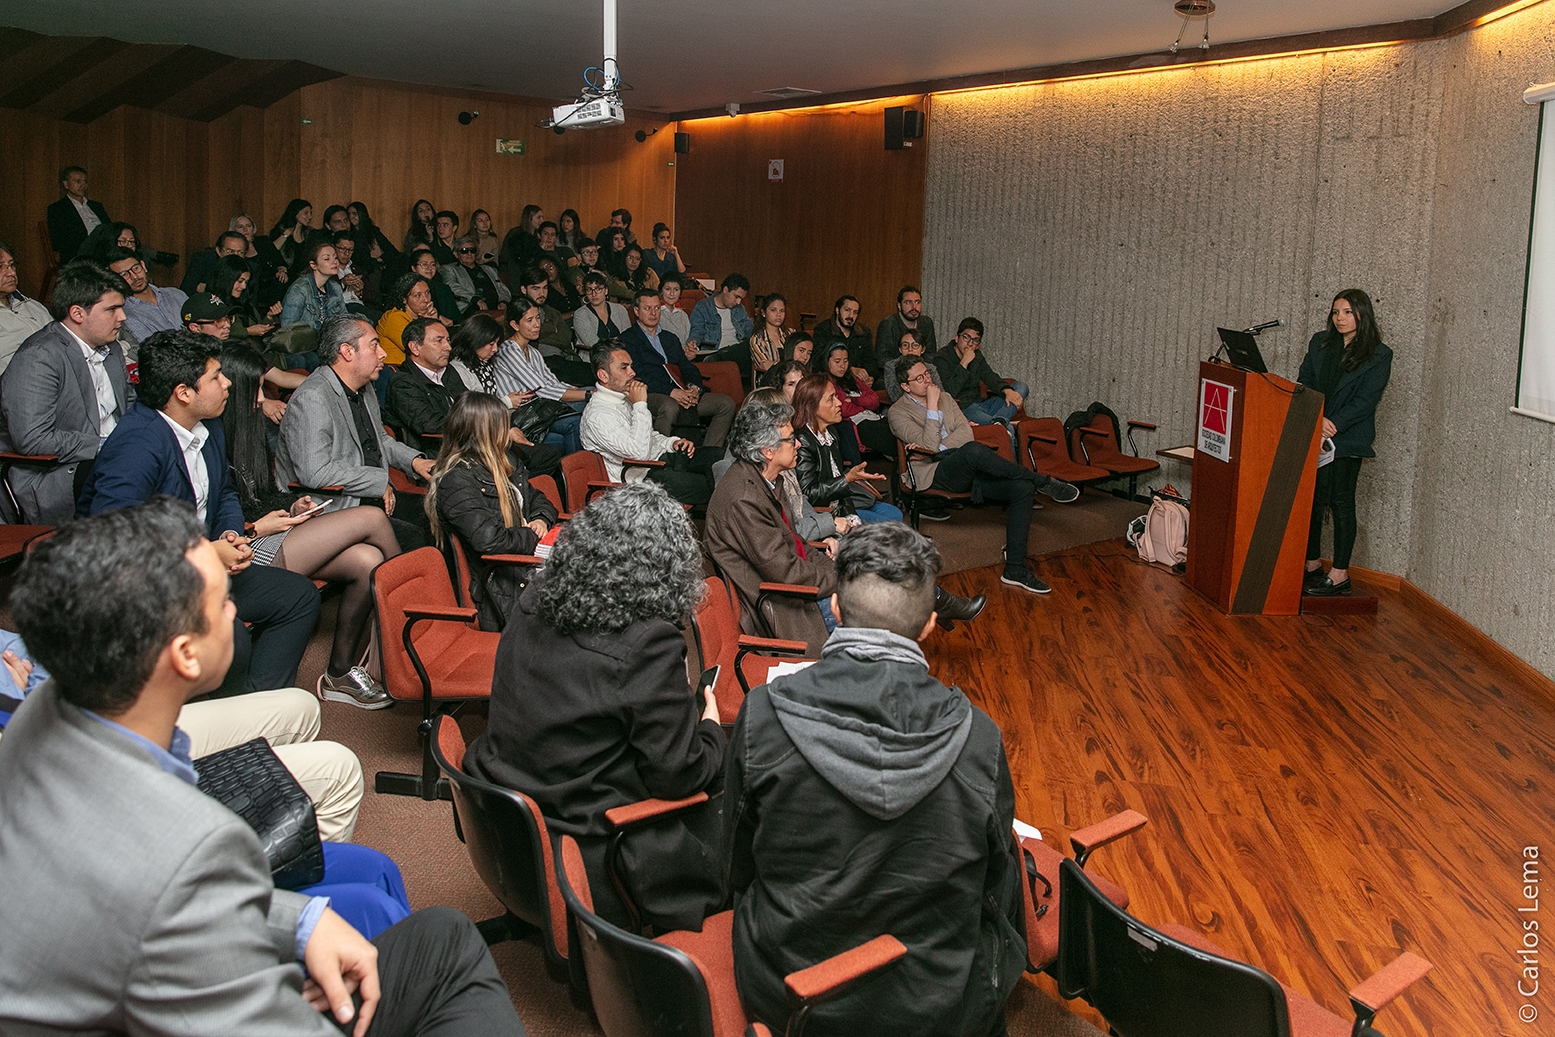 Audiencia en el auditorio durante evento de PEMP Centro historico